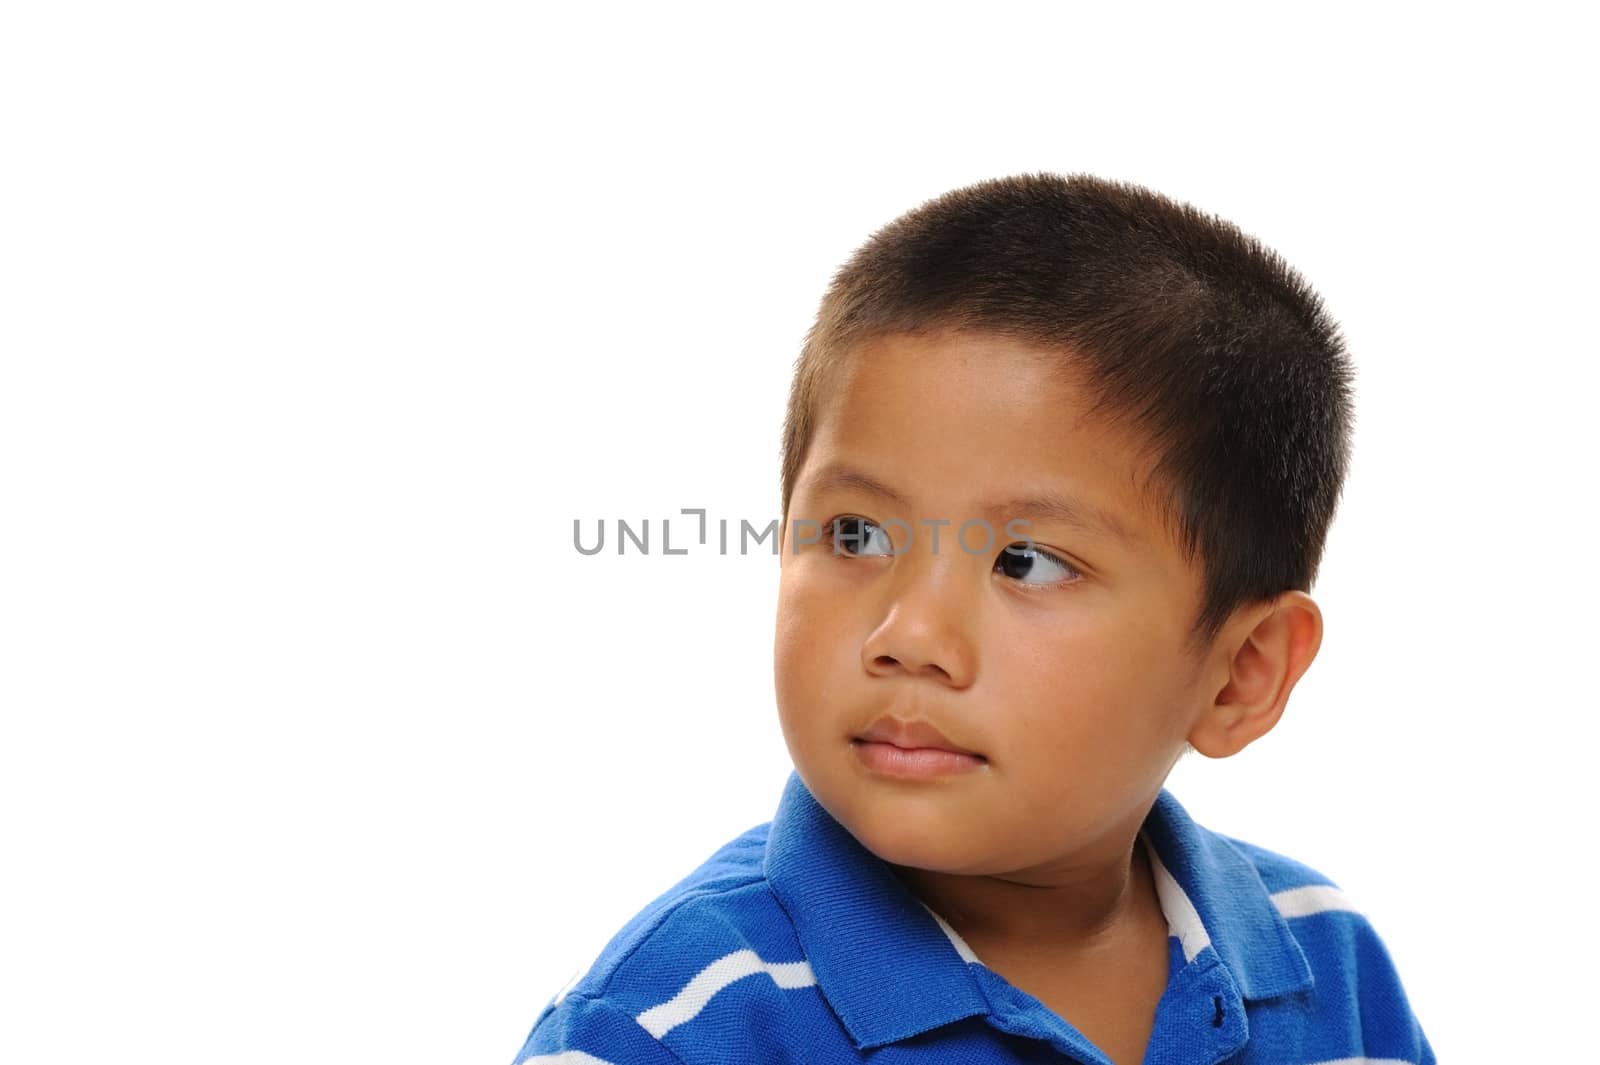 Asian boy looking away wearing blue shirt